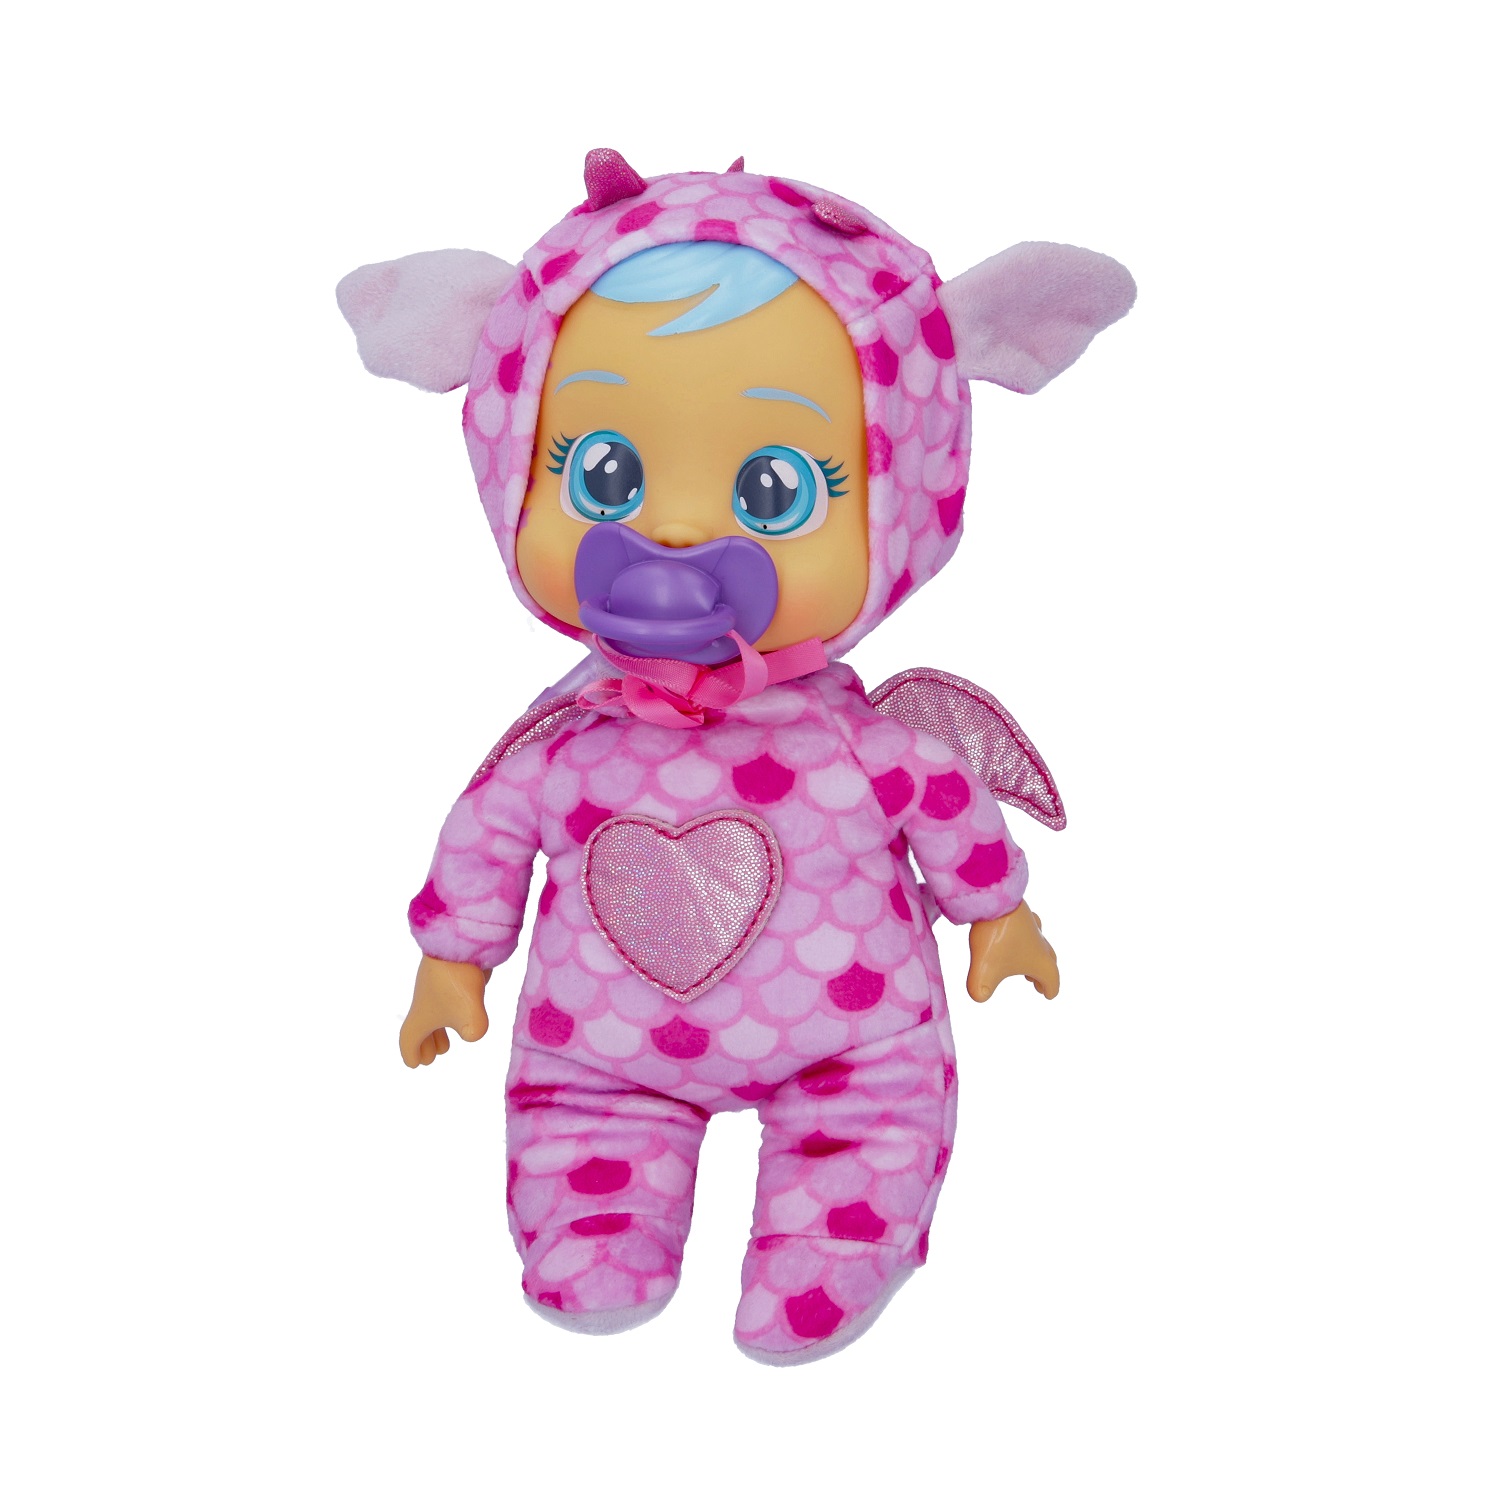 Кукла Cry Babies Край Бебис Бруни Малышка интерактивная плачущая 41039